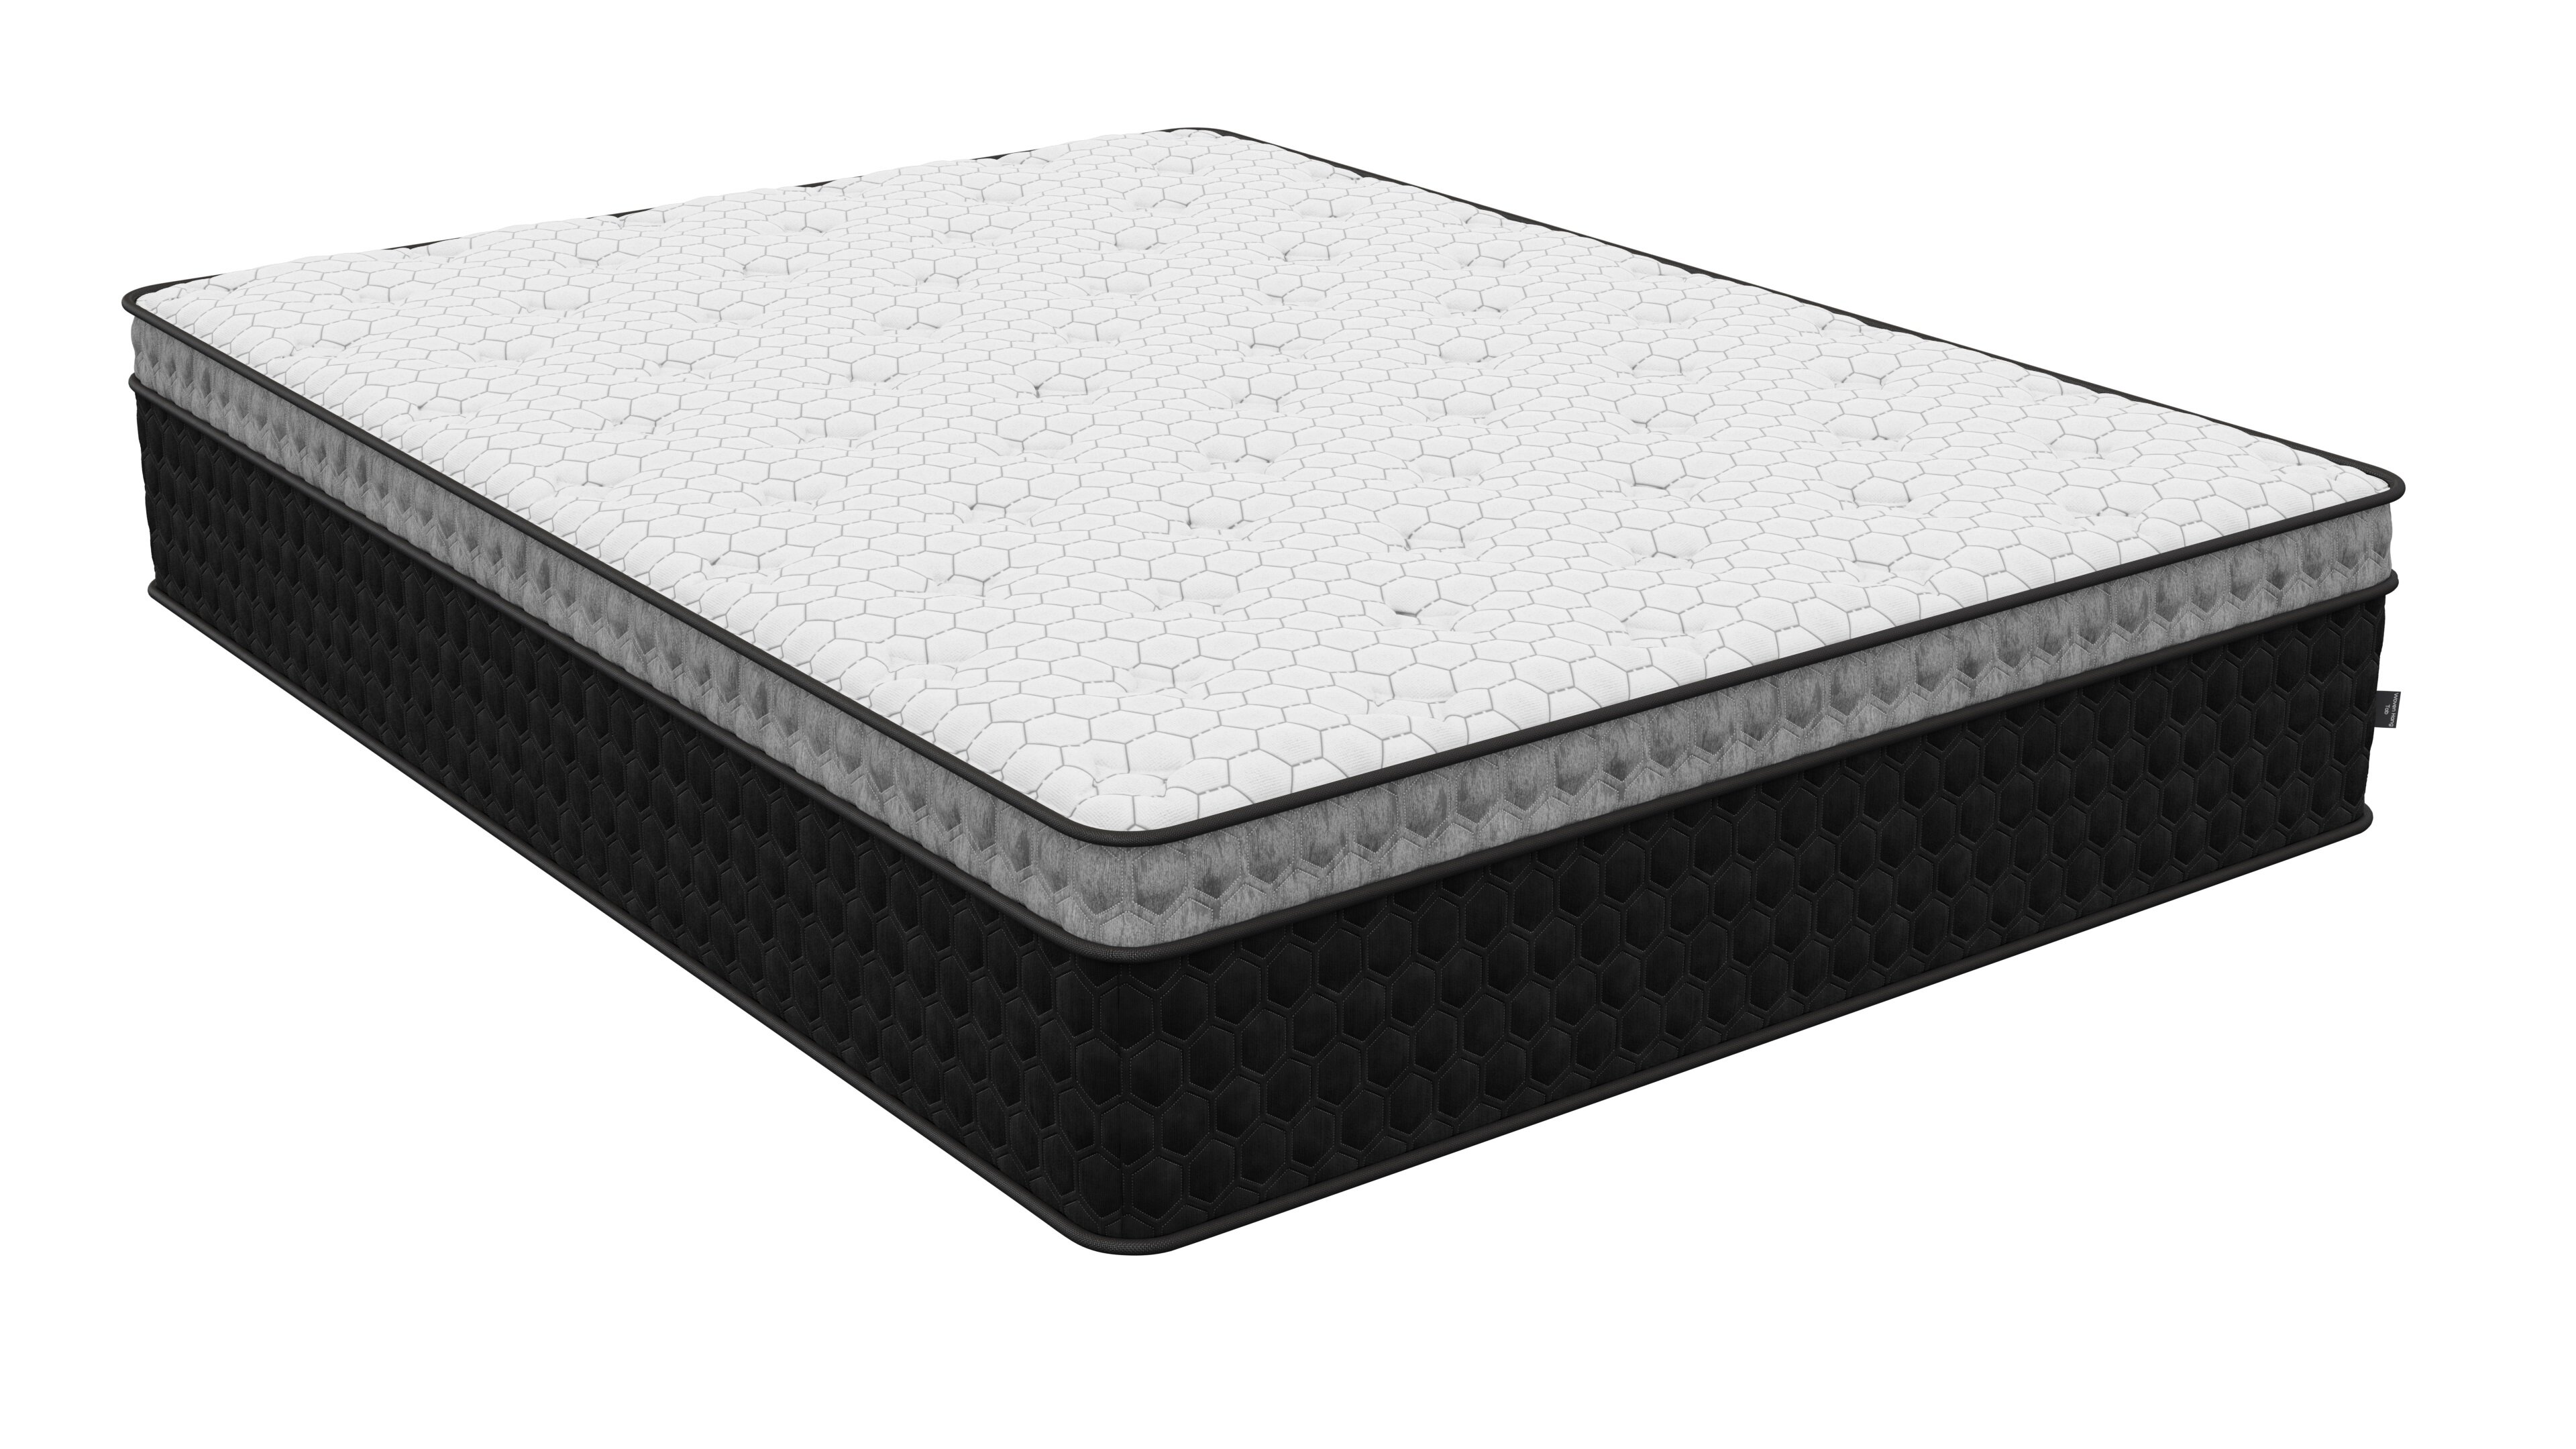 imagine mattress by diamond mattress reviews